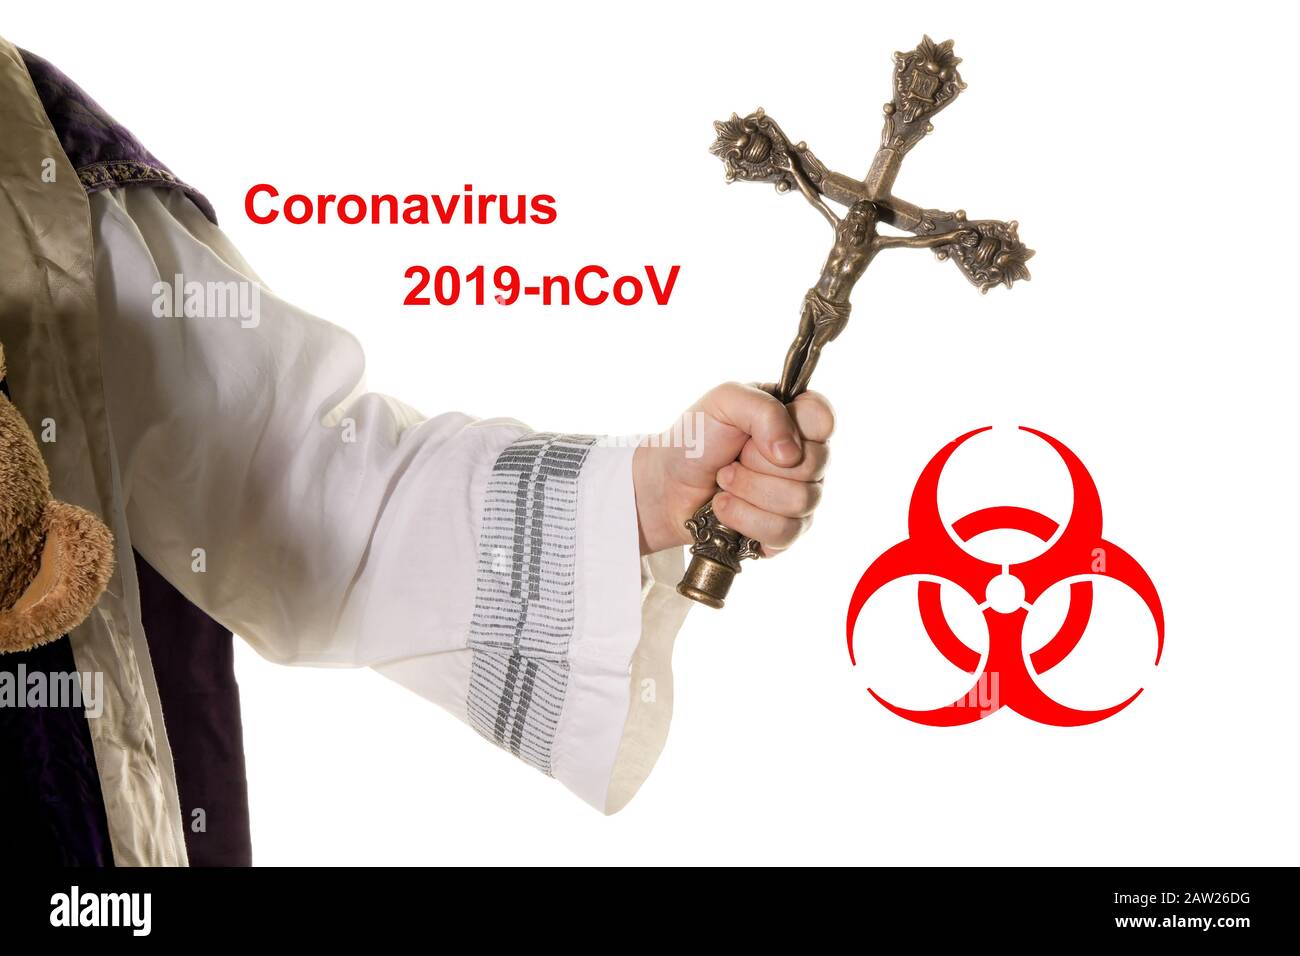 priest with cruzifix fighting against coronavirus, 2019-nCoV Stock Photo